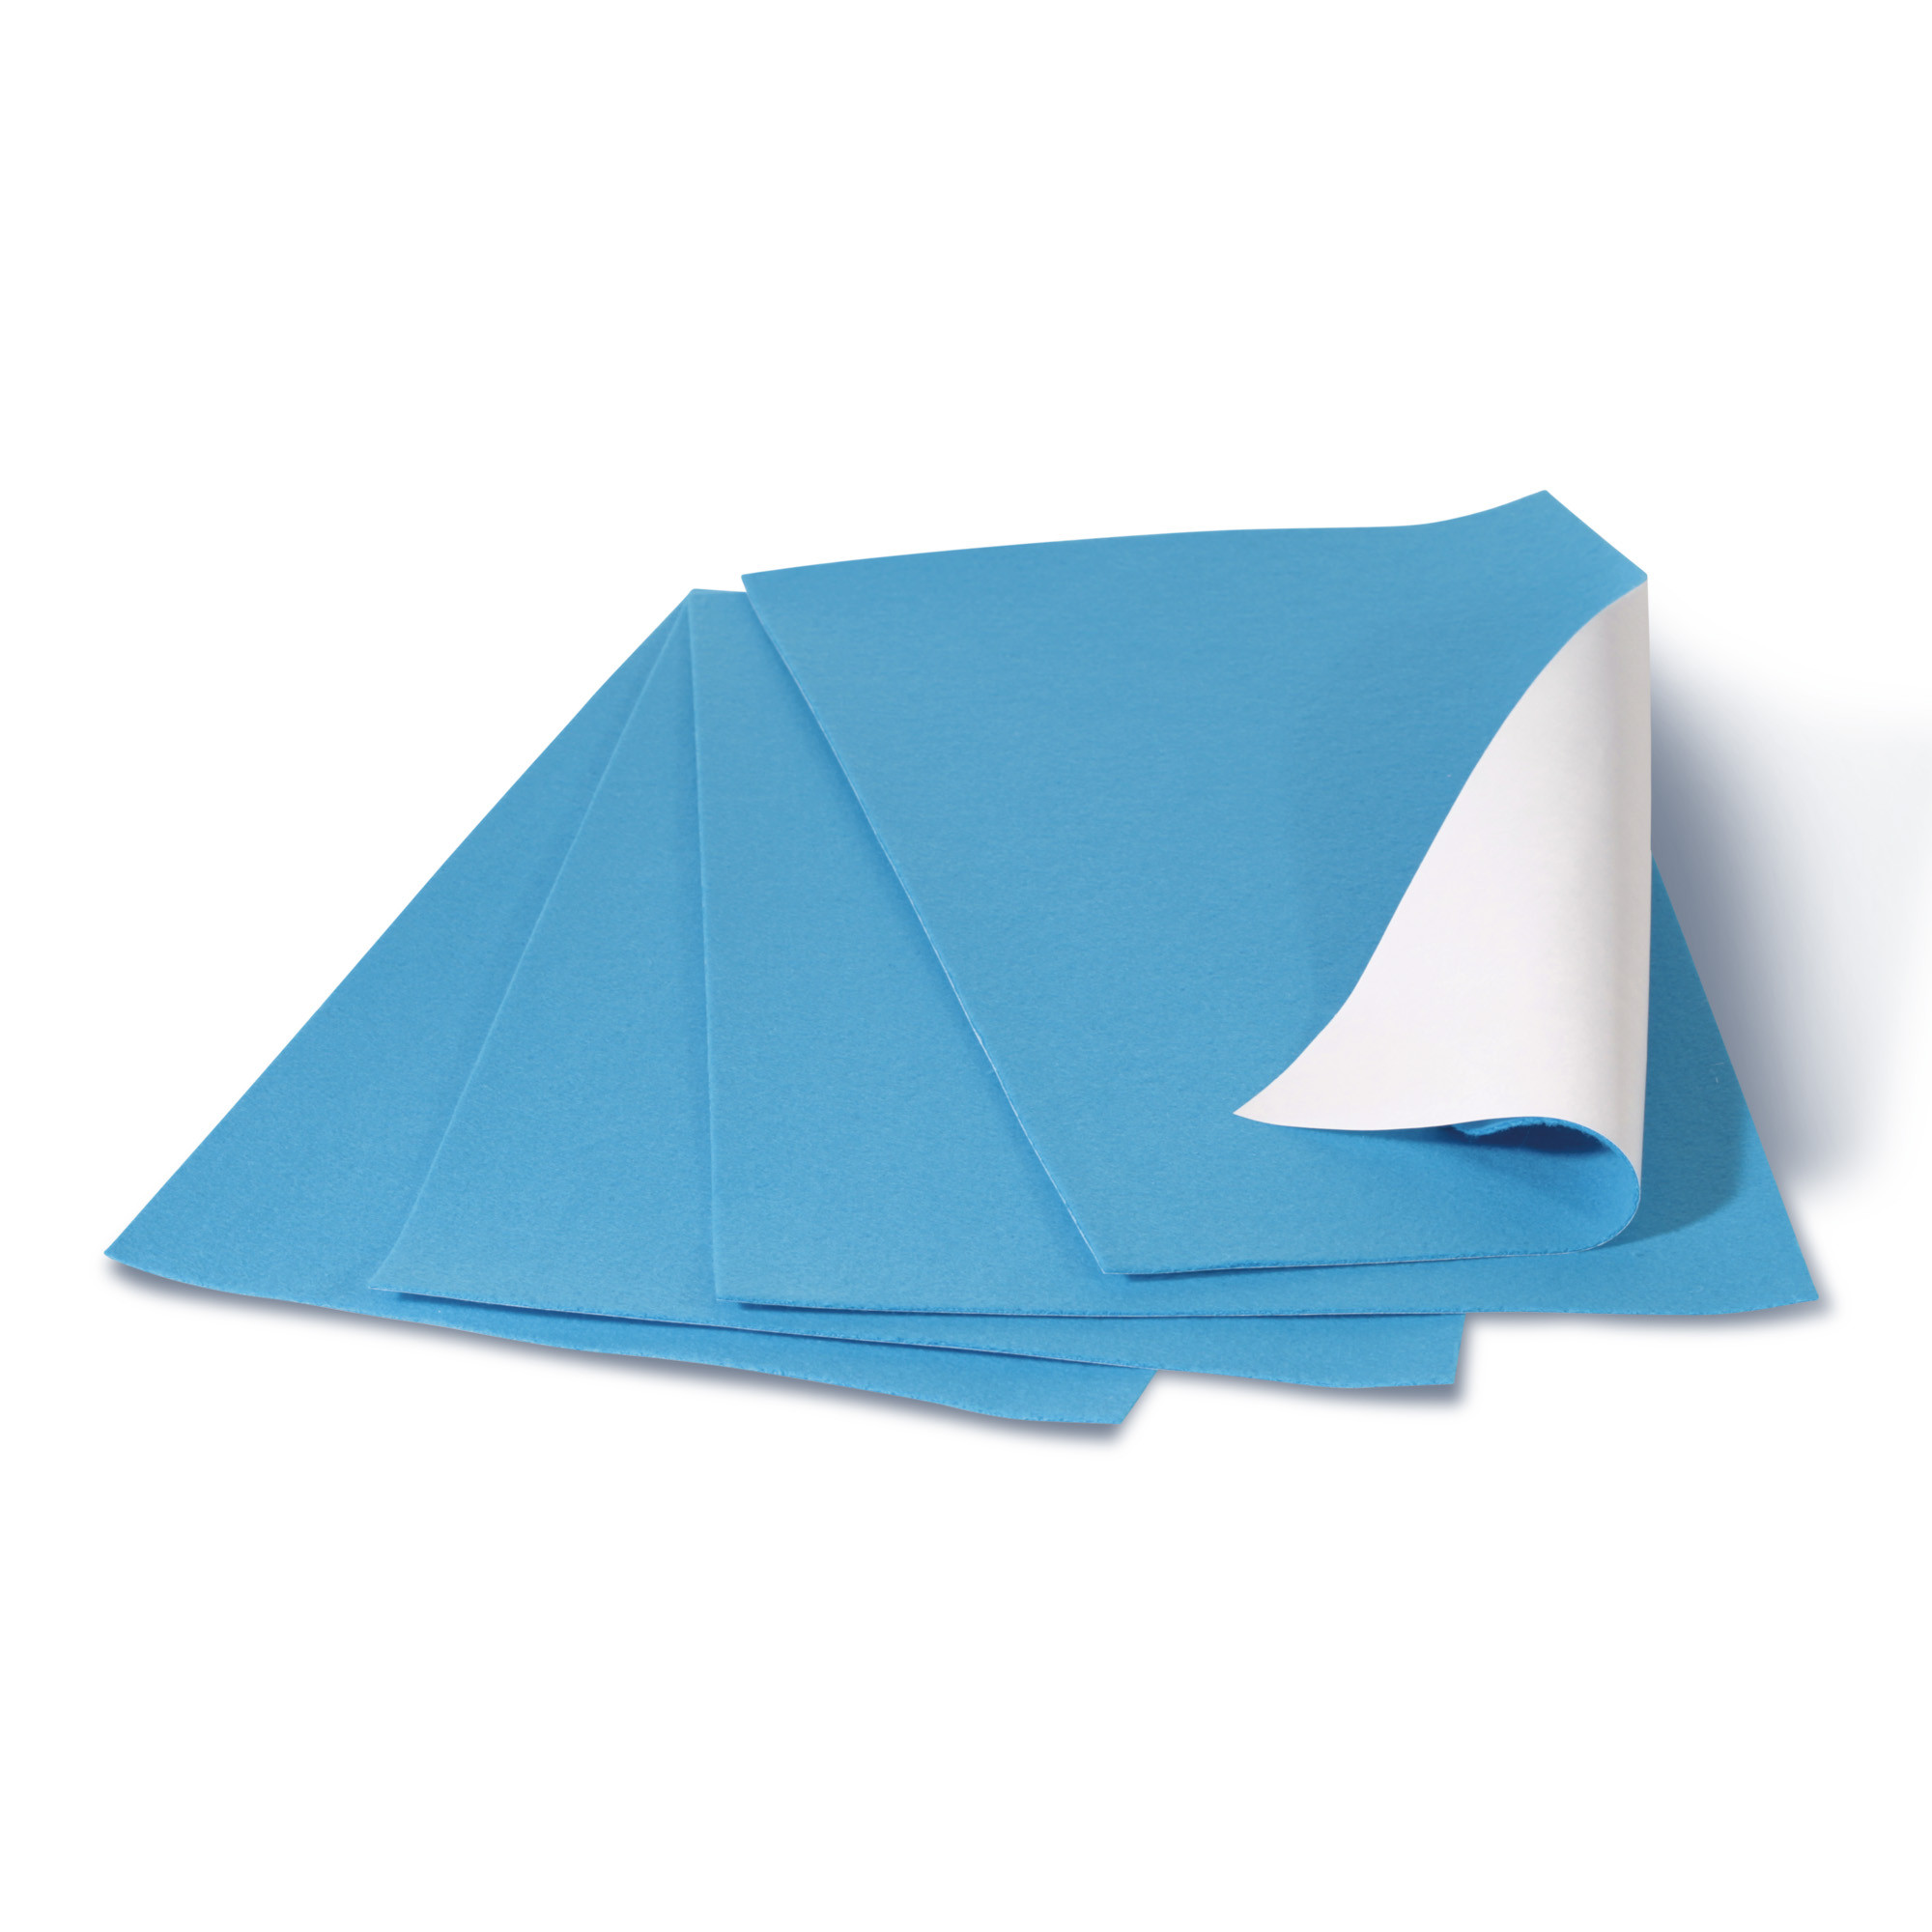 Feutre Fleecy Web Bleu en pure coton 2 mm 22,5 x 40 cm Paquet de 4 plaques